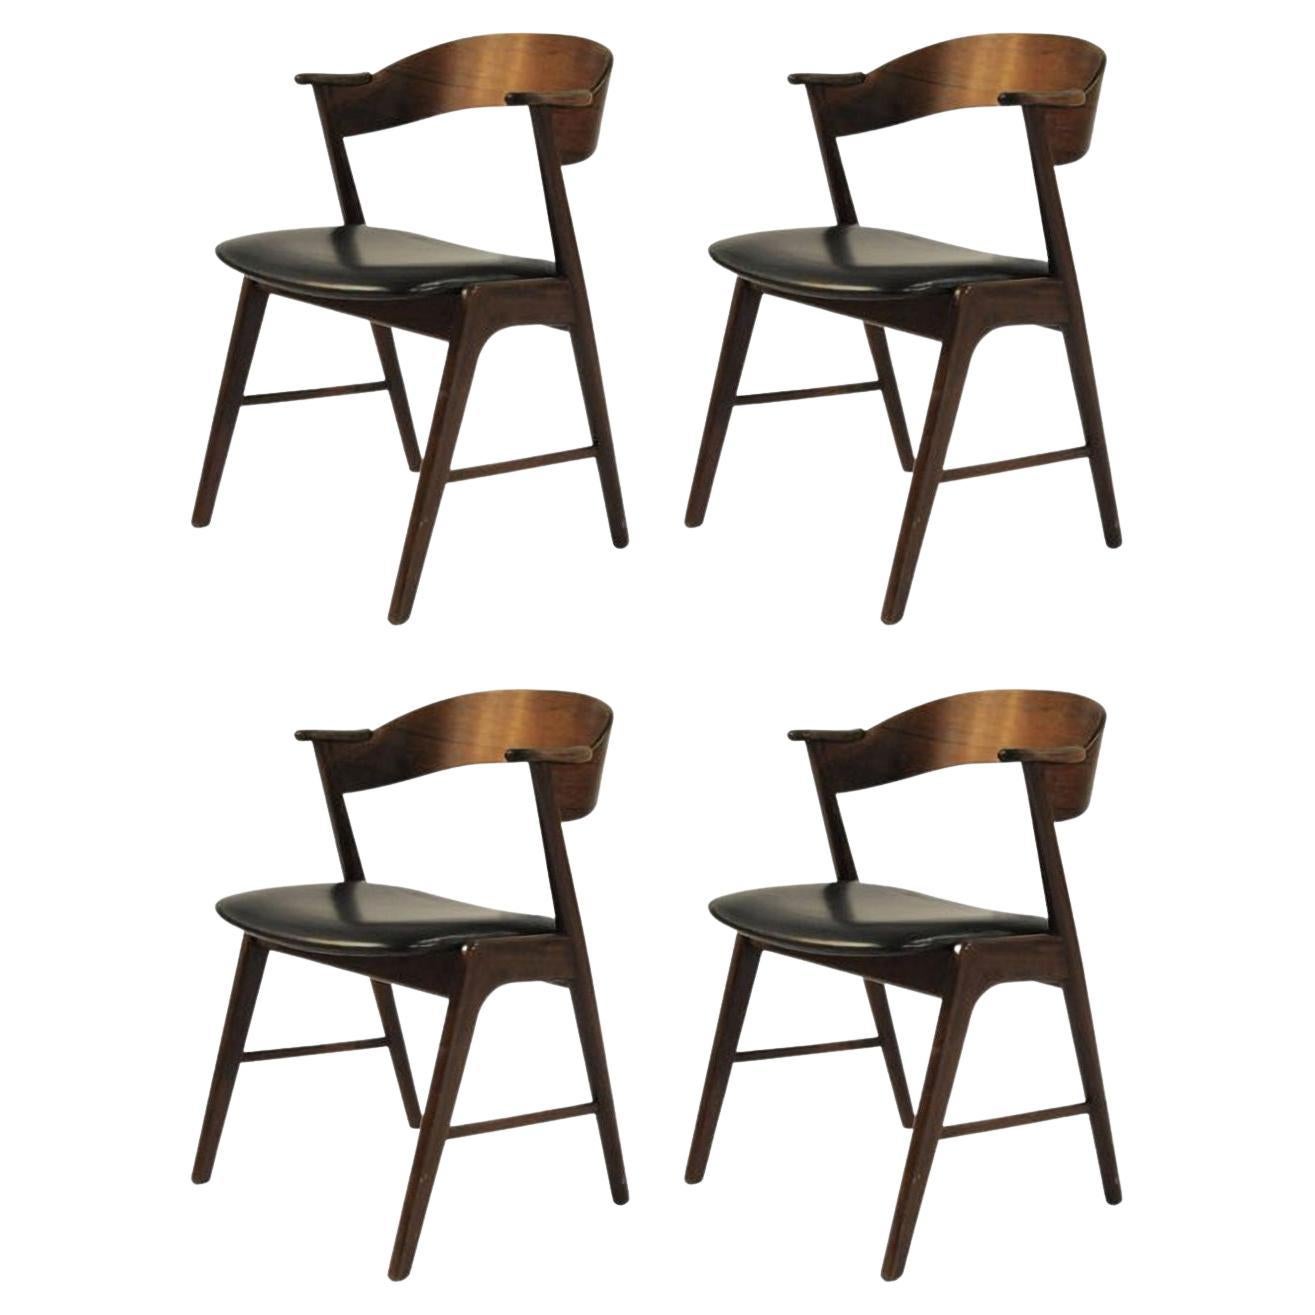 1960s Quatre chaises de salle à manger en palissandre danois entièrement restaurées tapisserie sur mesure